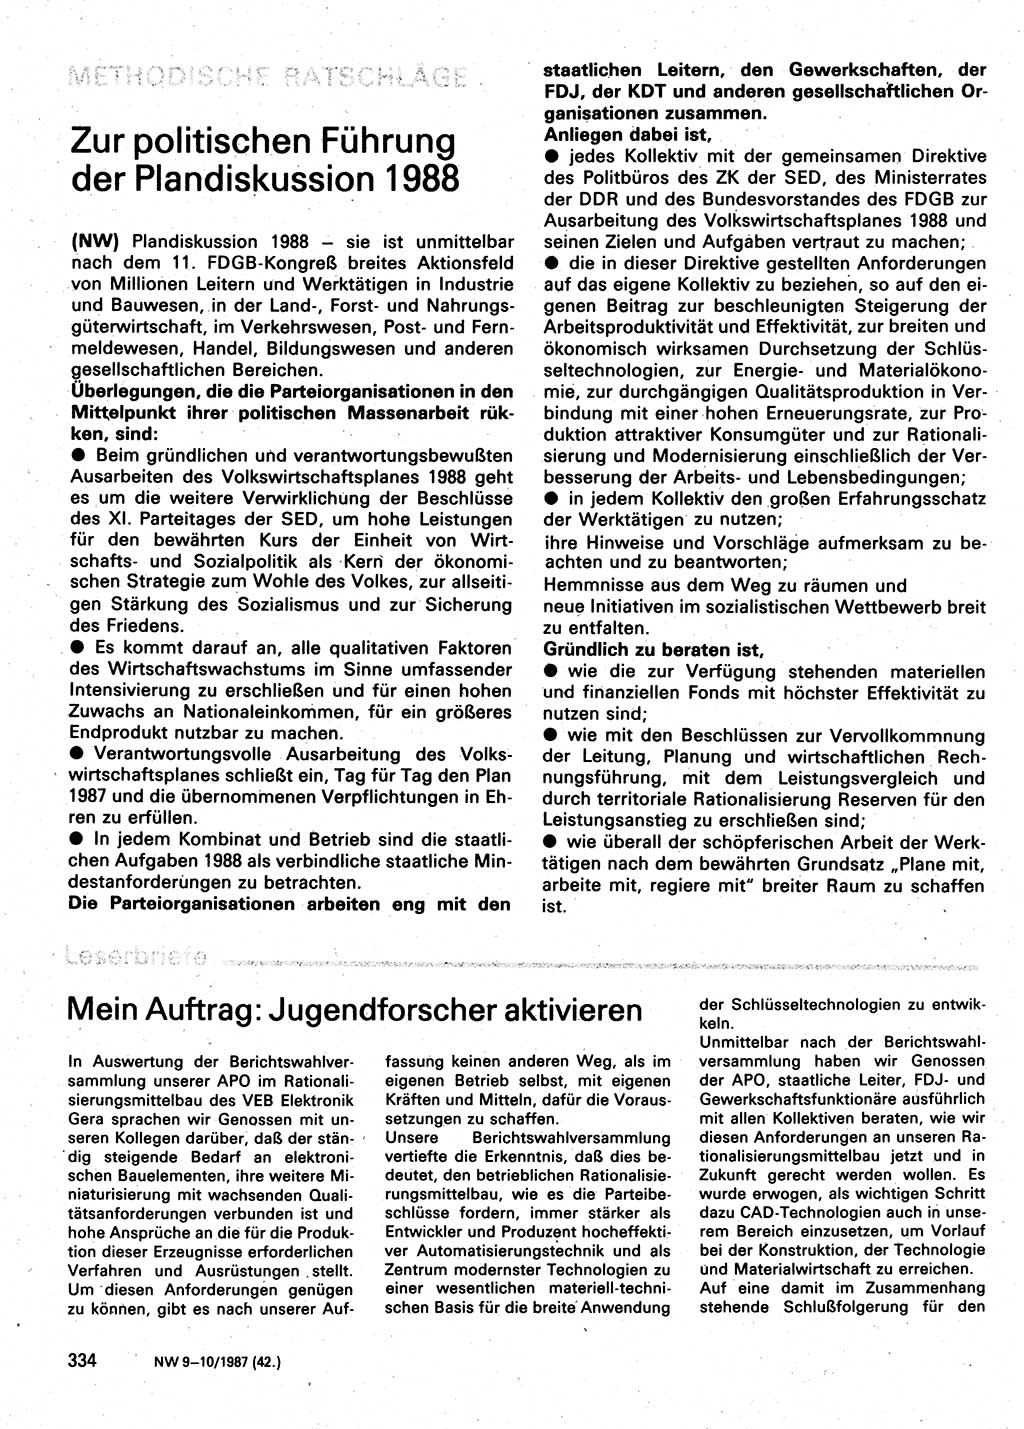 Neuer Weg (NW), Organ des Zentralkomitees (ZK) der SED (Sozialistische Einheitspartei Deutschlands) für Fragen des Parteilebens, 42. Jahrgang [Deutsche Demokratische Republik (DDR)] 1987, Seite 334 (NW ZK SED DDR 1987, S. 334)